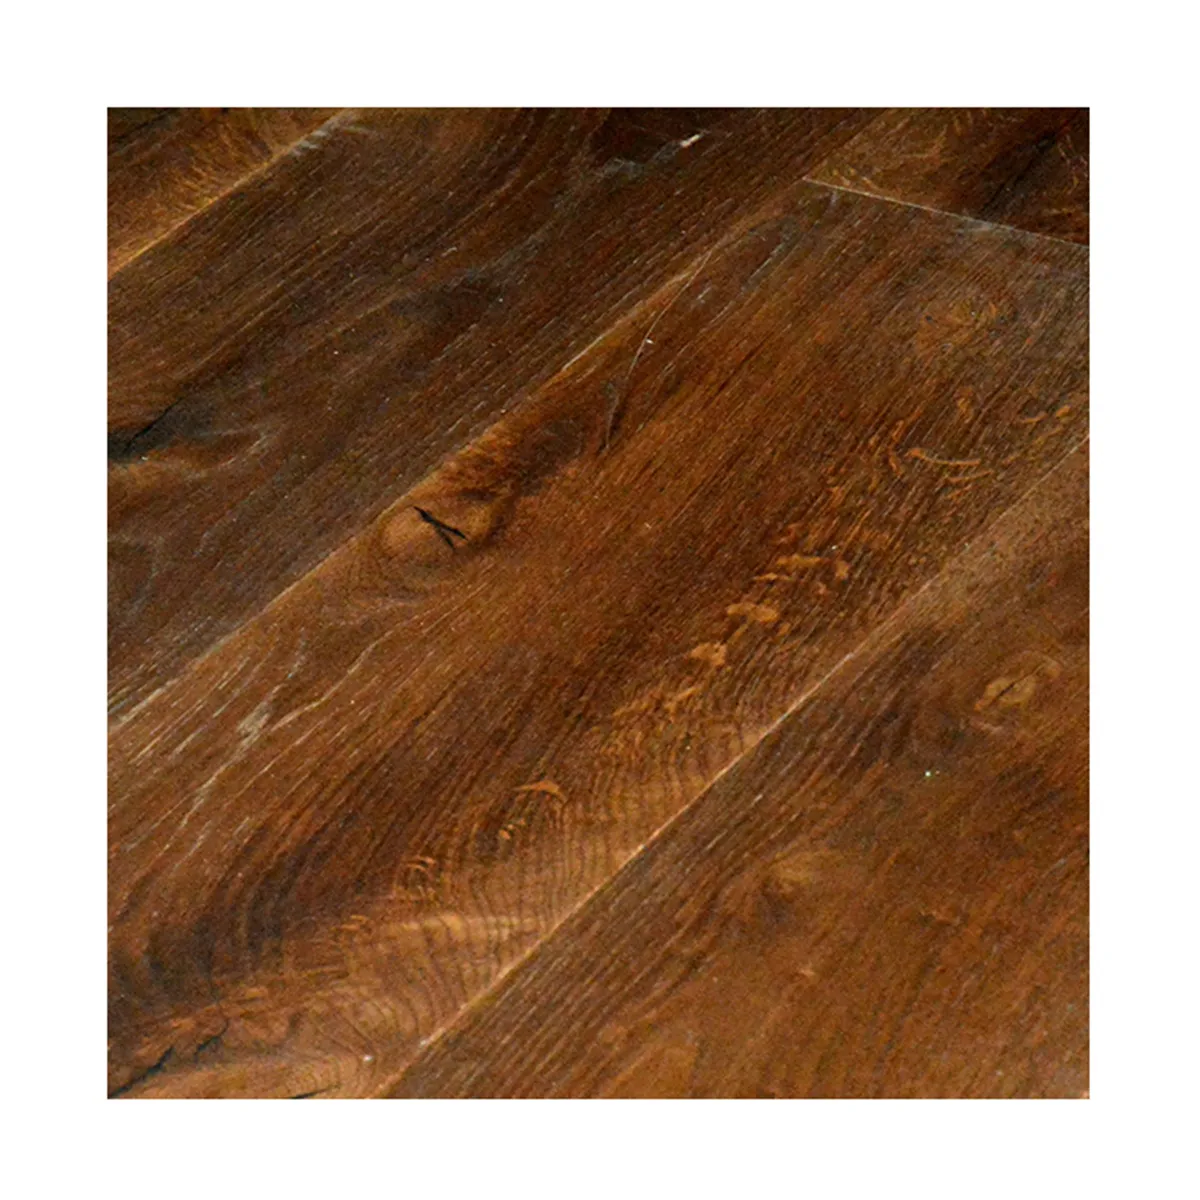 Panel de suelo de madera personalizado suelo de madera de roble suelo de madera con lengüeta y ranura de 3 capas